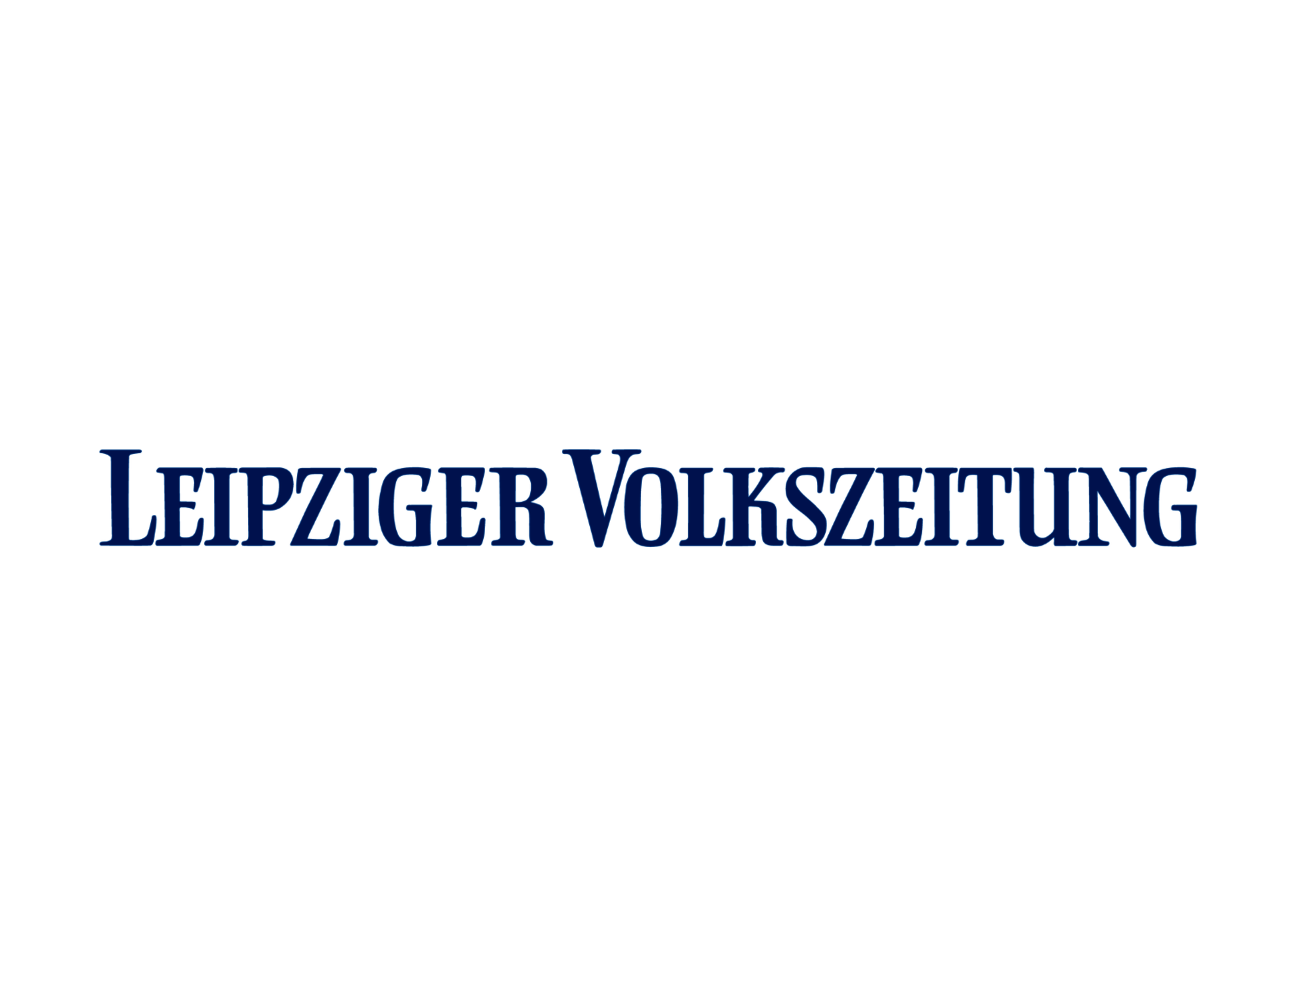 Leipziger_Volkszeitung_logo